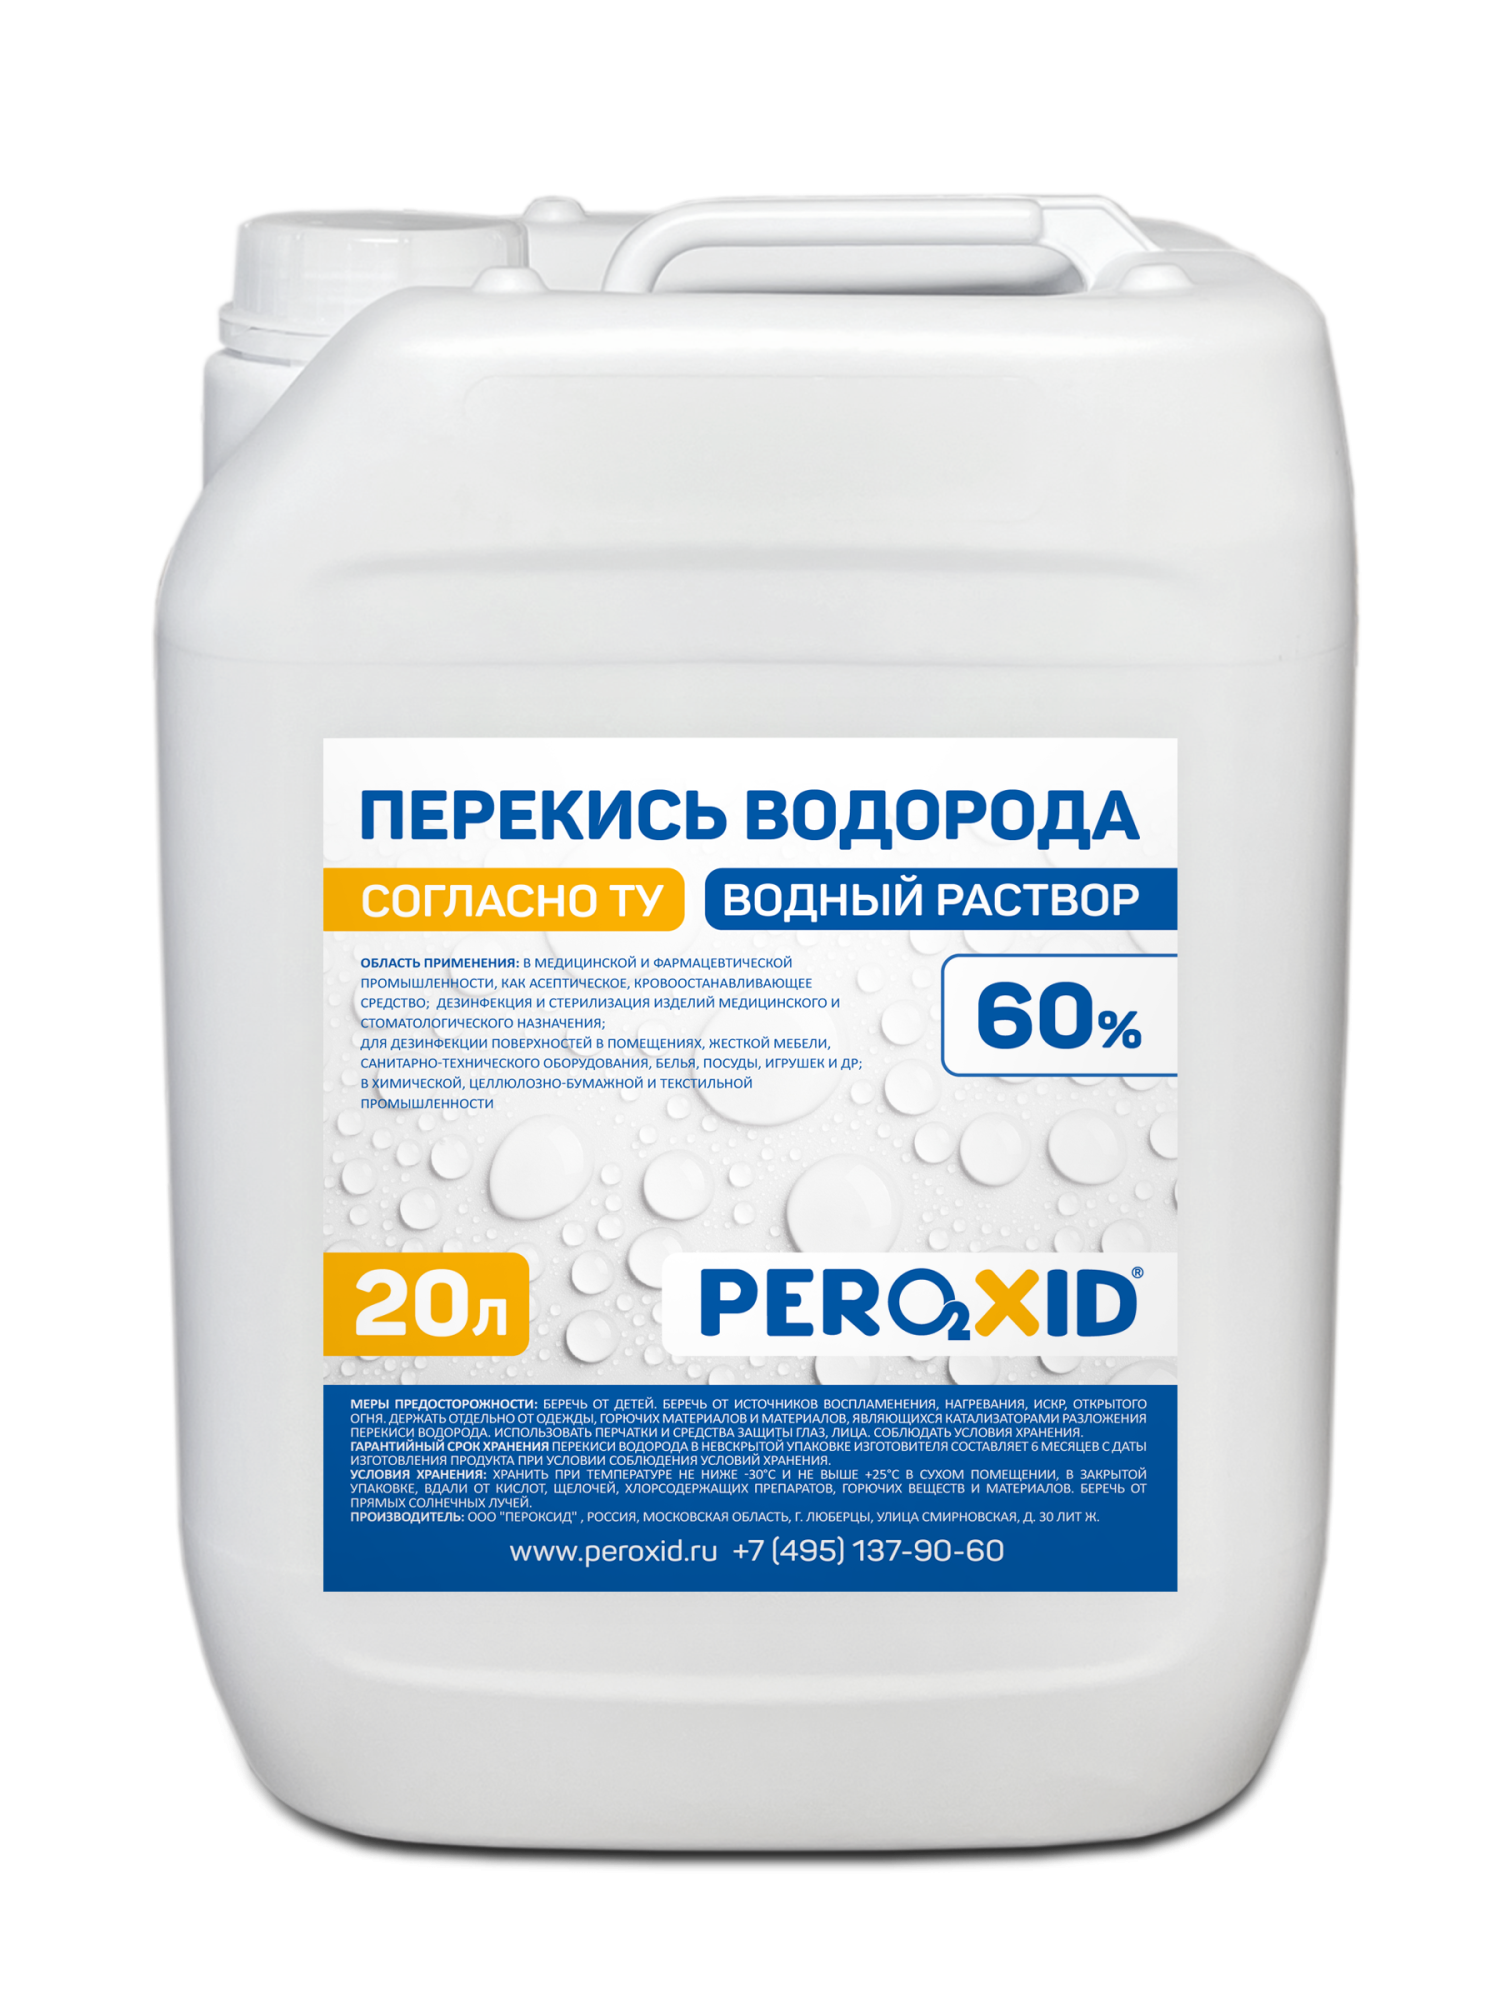 Перекись водорода водный раствор PEROXID 60% марка  ТУ 2123-001-25665344-2008 20 л/24 кг